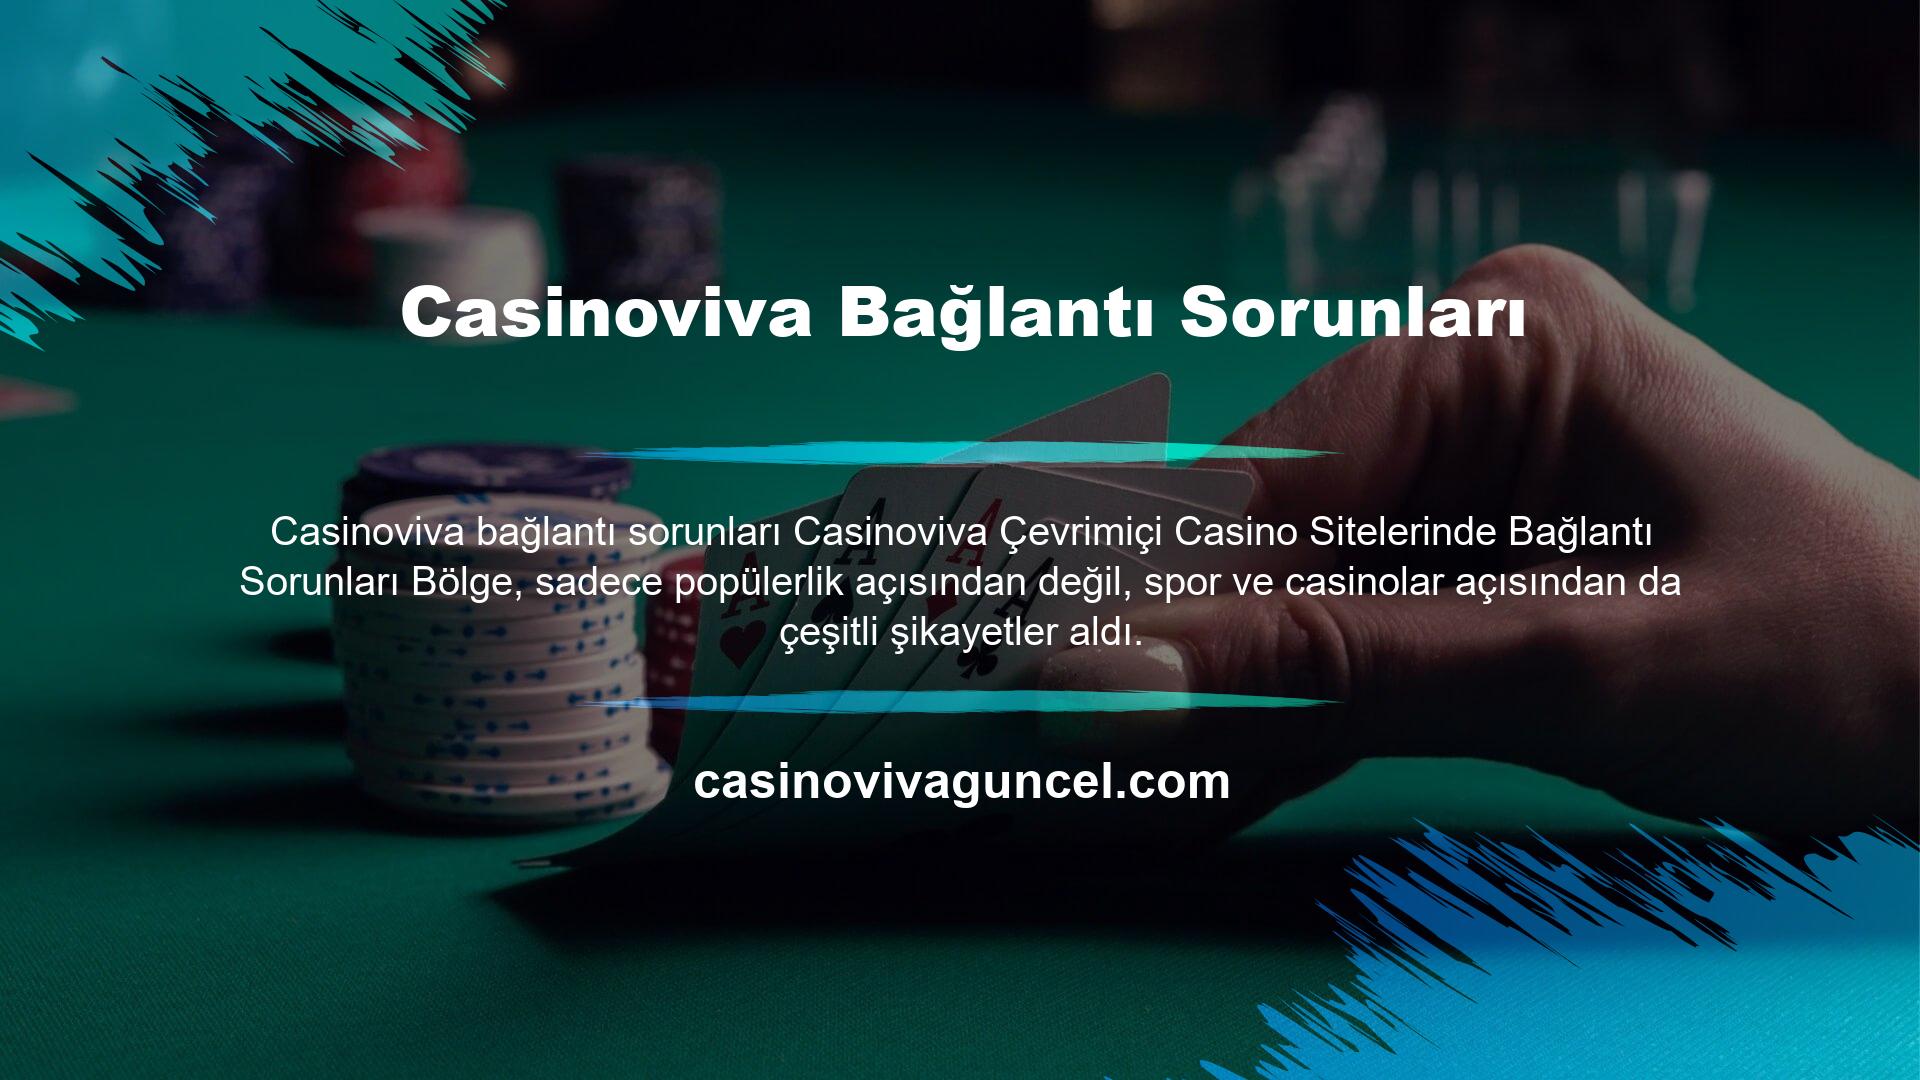 Casinoviva Bağlantı Sorunları